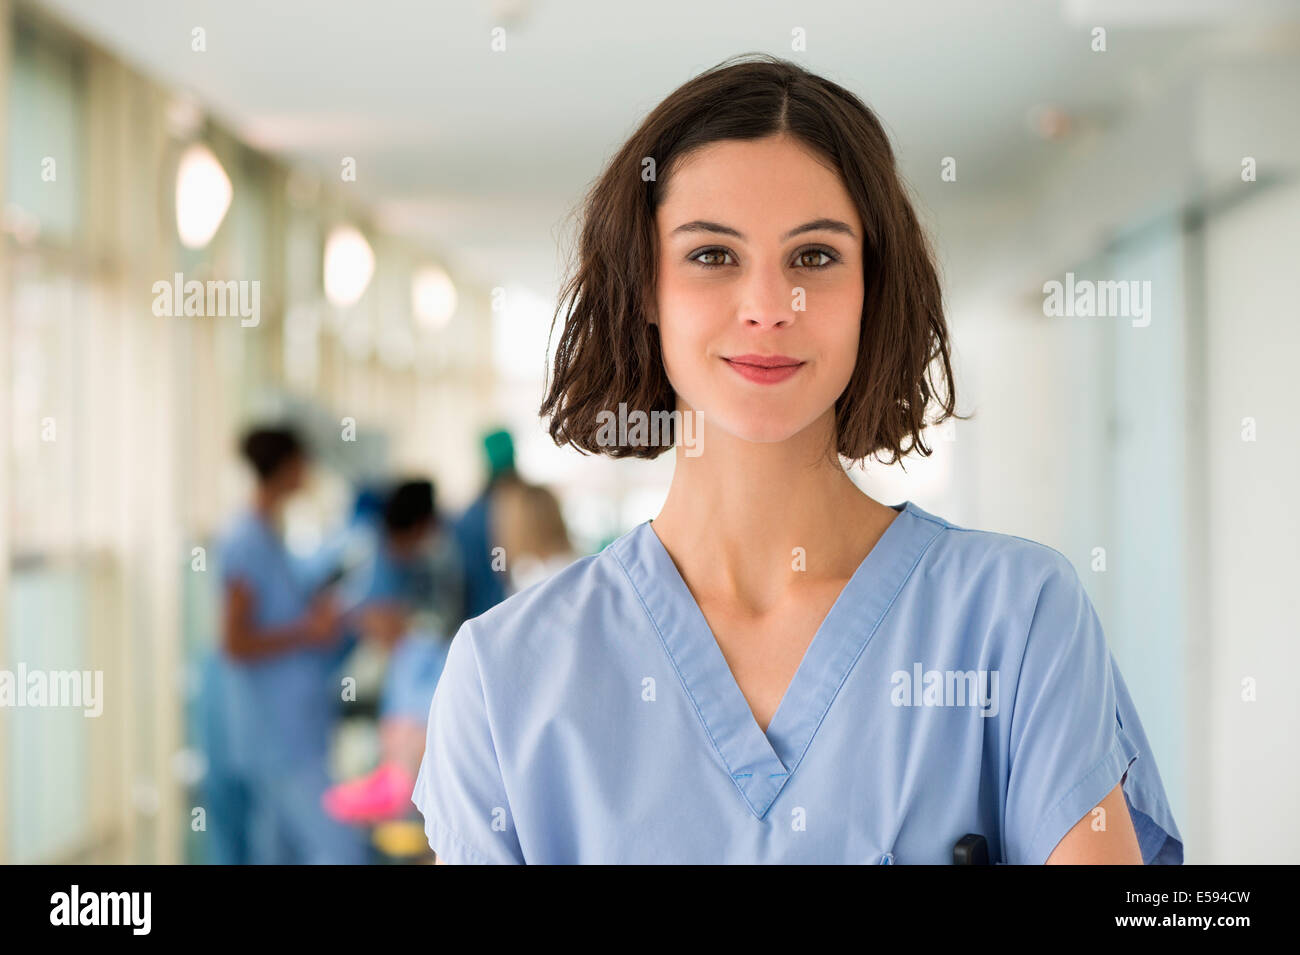 Portrait of a female nurse smiling Banque D'Images